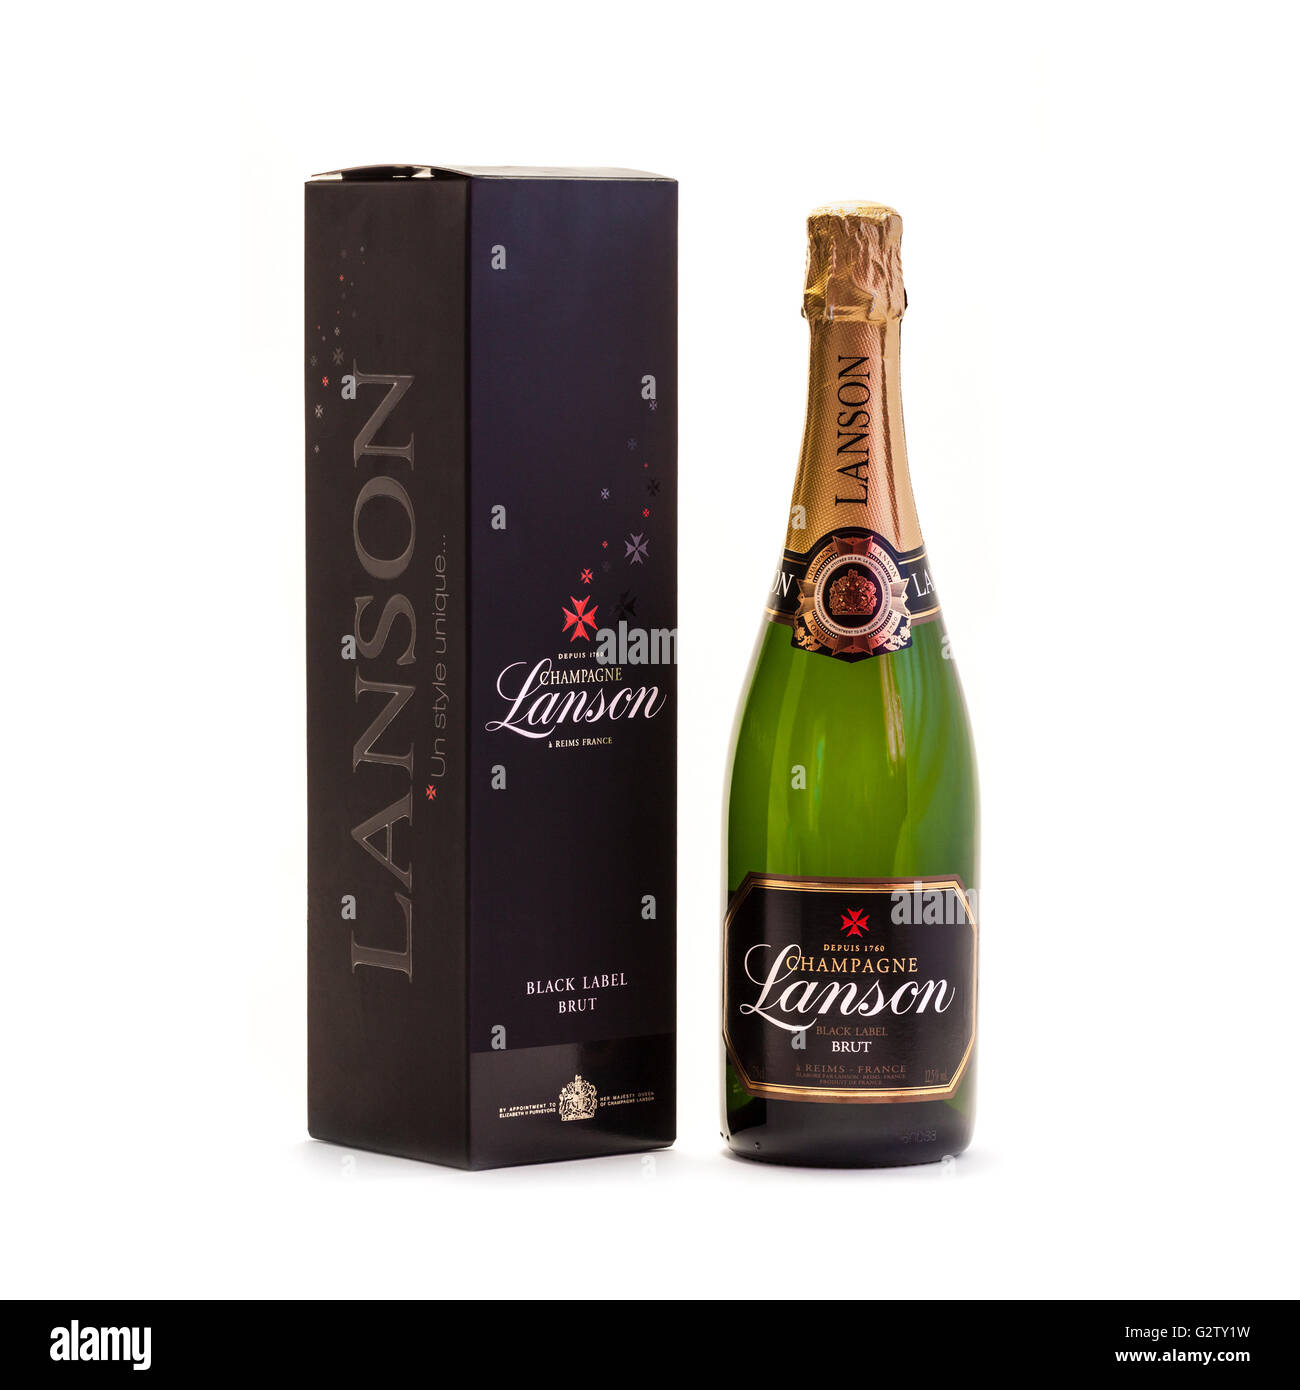 Bouteille de Champagne Lanson Black Label brut avec boîte-cadeau. Lanson a été fondée en 1760 par un magistrat, François Delamotte. Banque D'Images